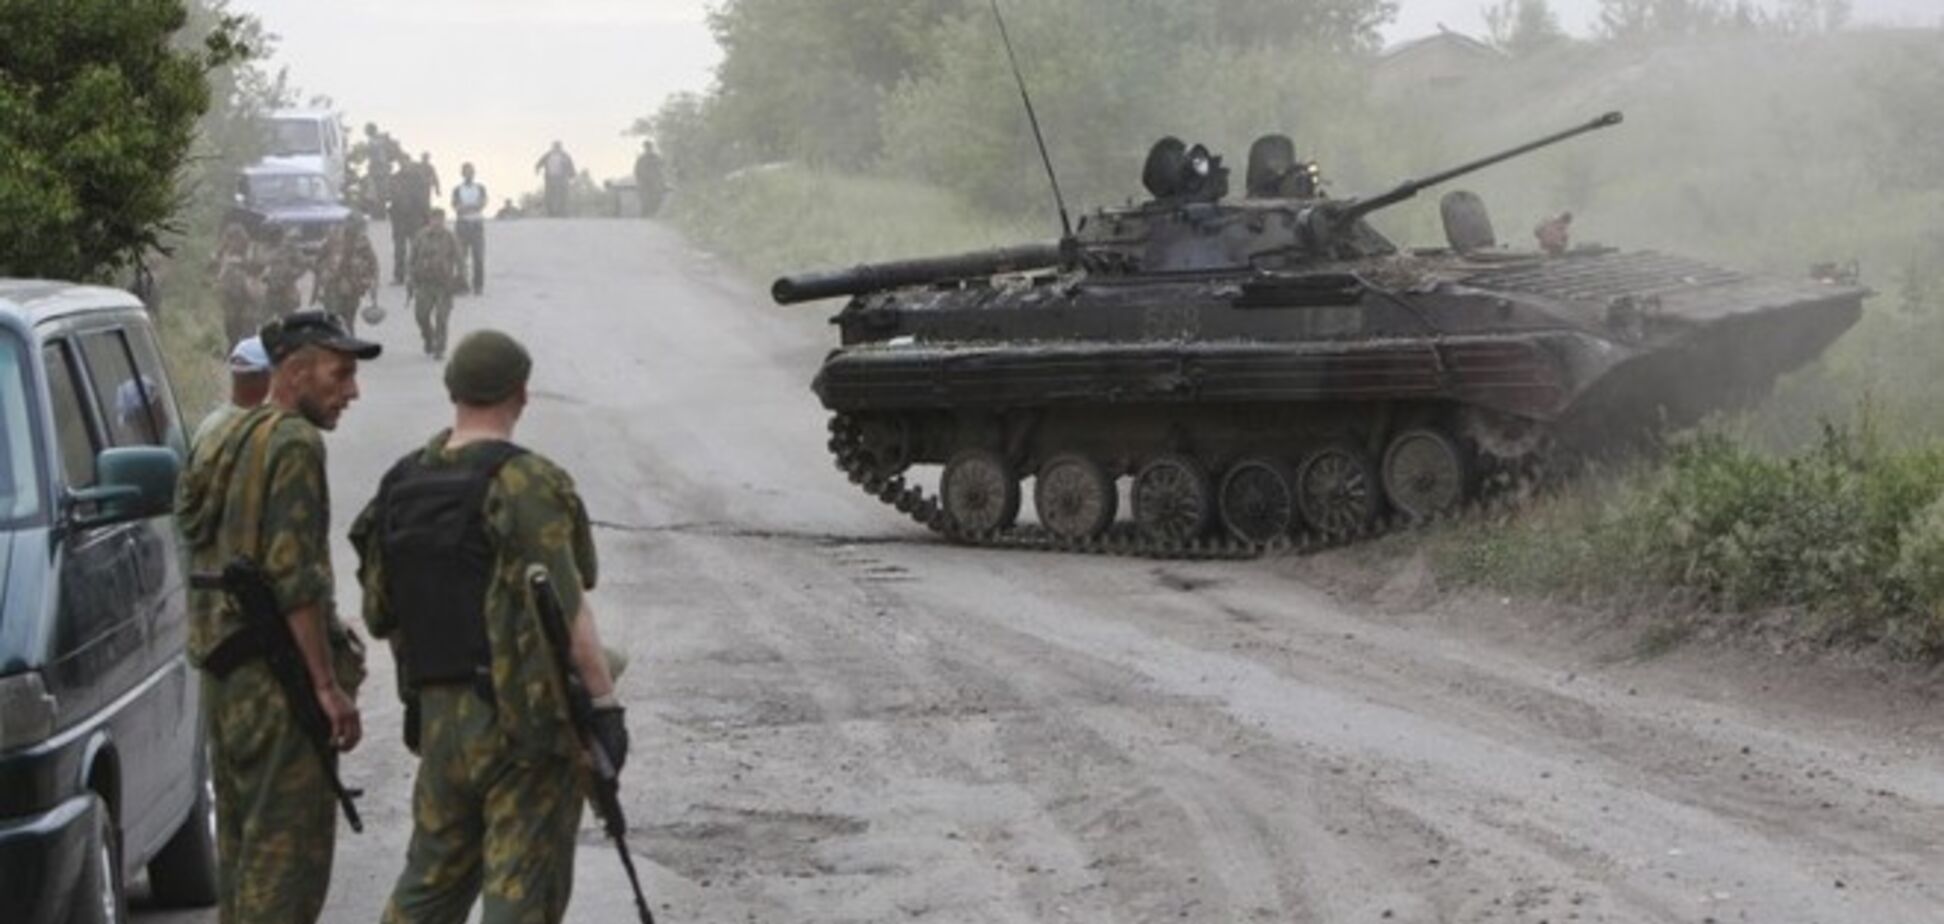 Москаль: 112 бійців ВСУ і Нацгвардії потрапили в оточення на Луганщині, ситуація критична